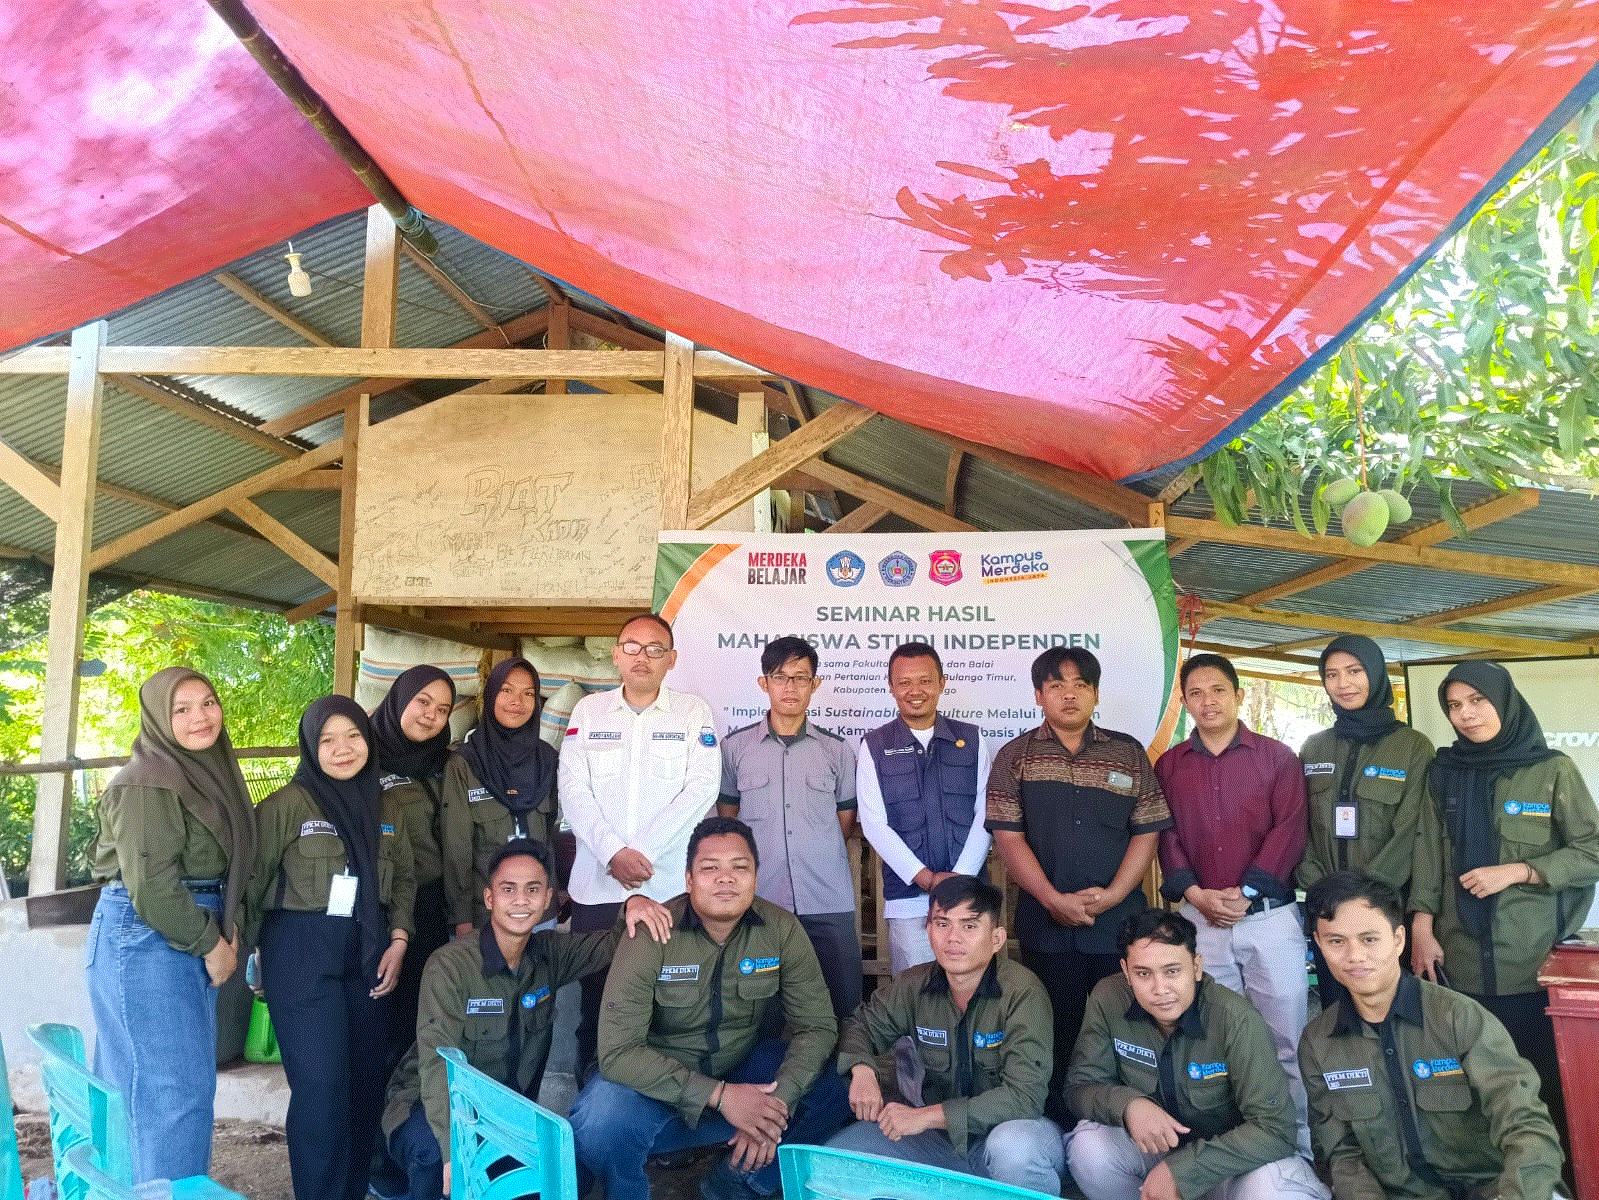 Seminar Hasil Mahasiswa Studi Independen PKKM 2023 dilaksanakan di Kebun BPP Bulango Timur